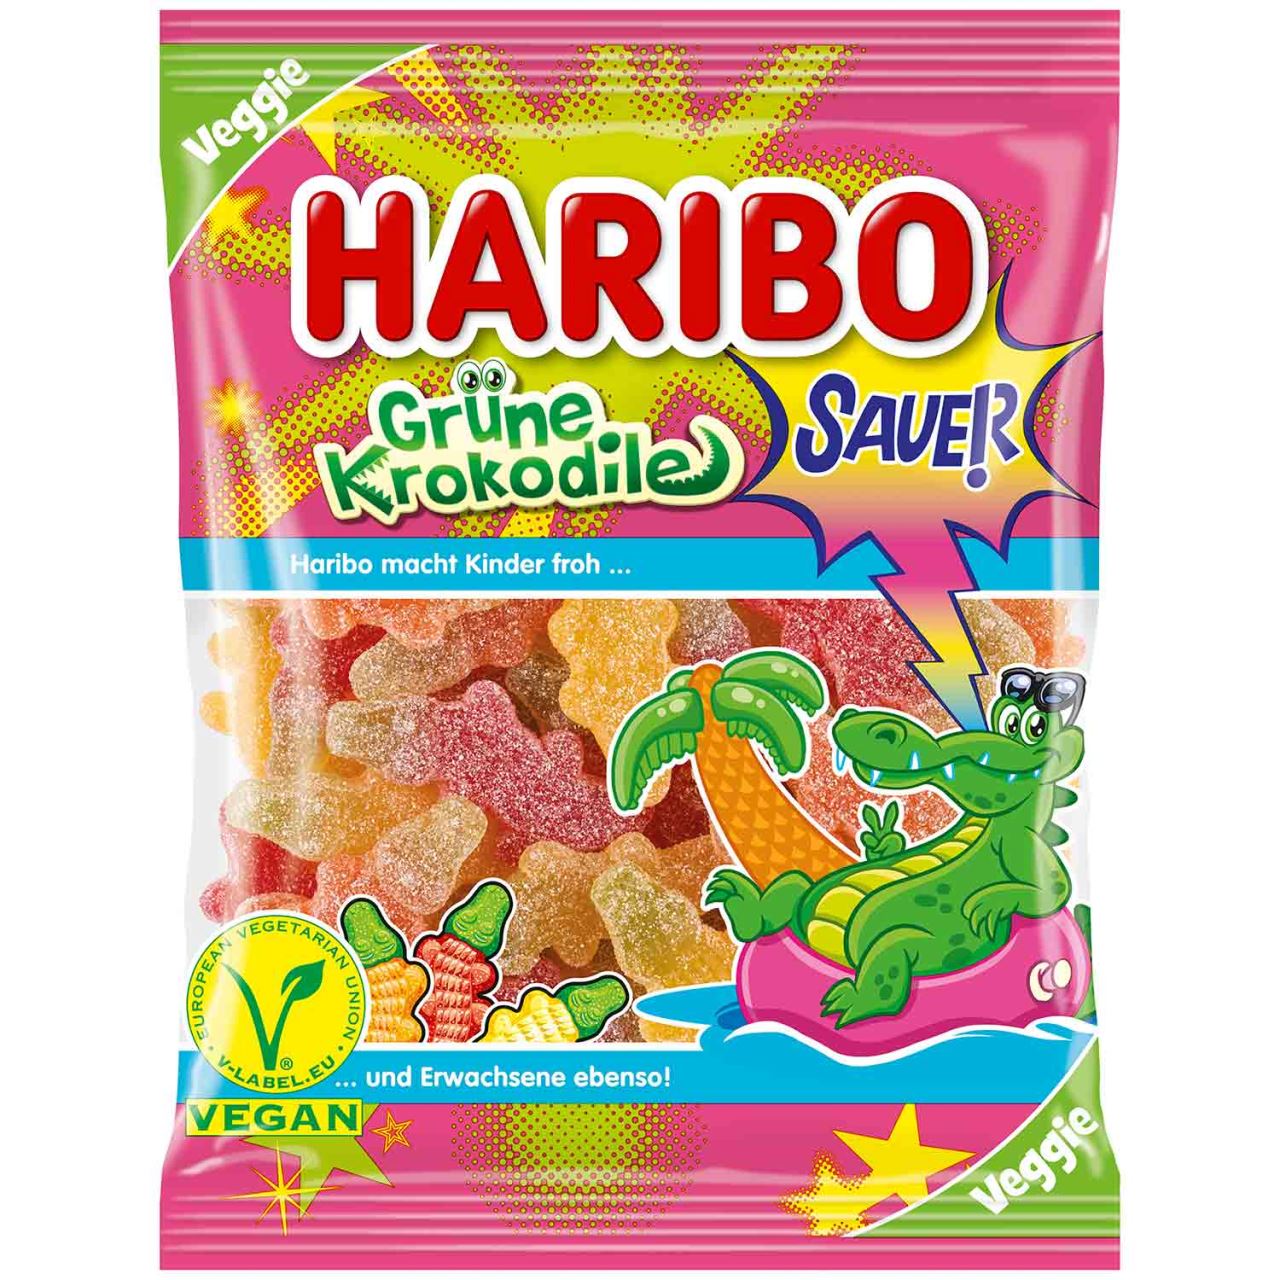 Haribo Licorice, Haribo Crocodile, Haribo Gummies, Haribo Candy